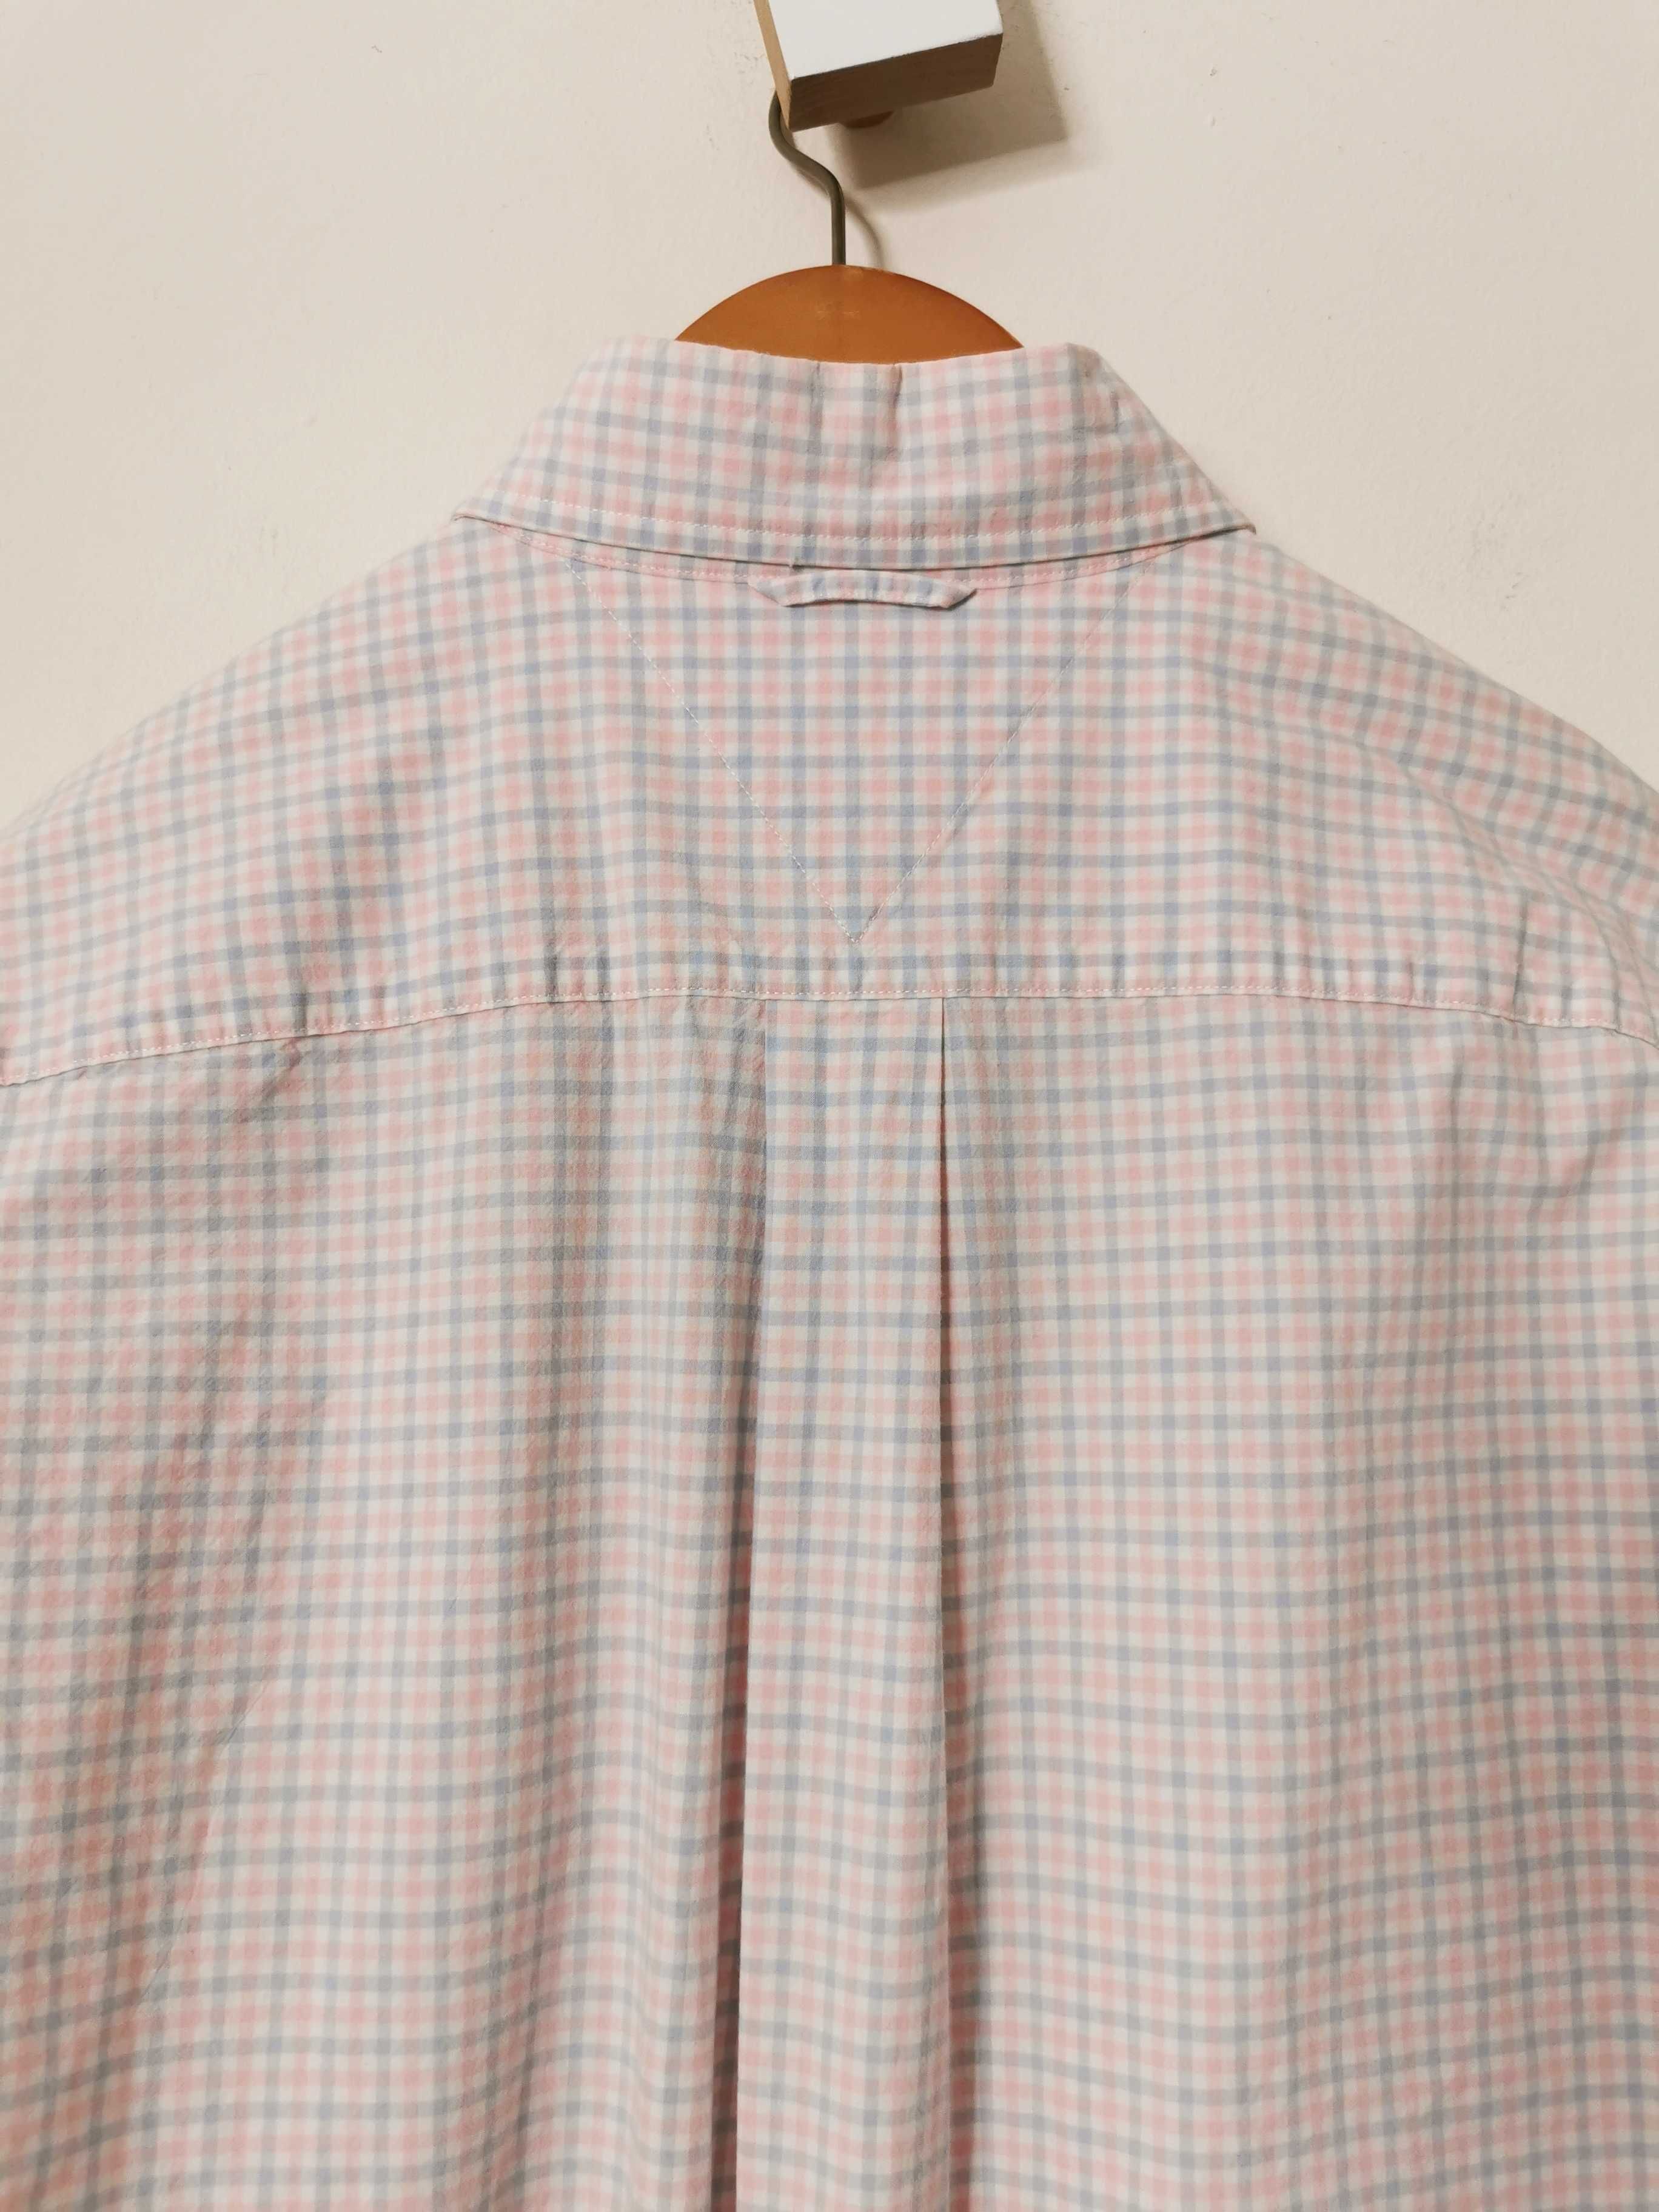 Tommy Hilfiger M/L elegancka koszula męska w paski ORYGINALNA IDEAŁ